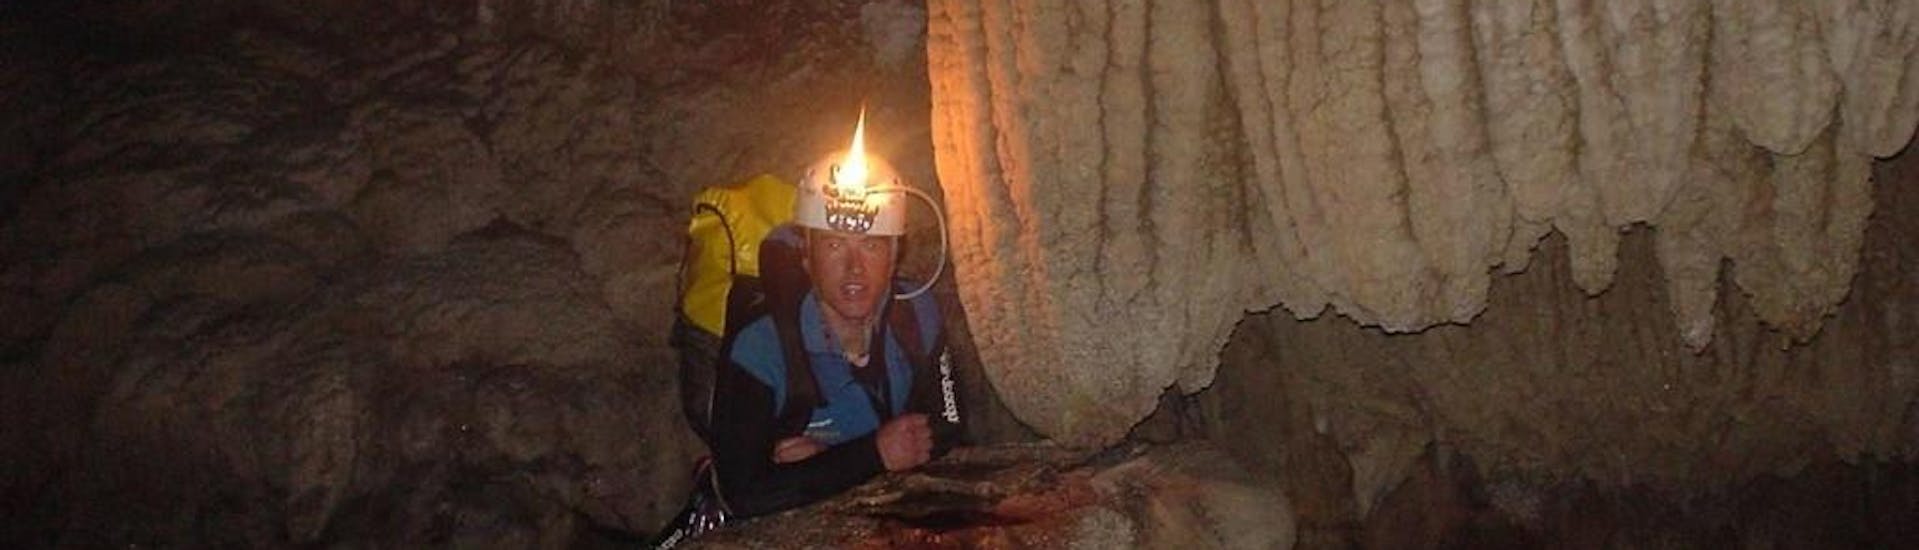 Speleocanyoning - Cueva de Nacimiento with Rana Sella Arriondas - Hero image